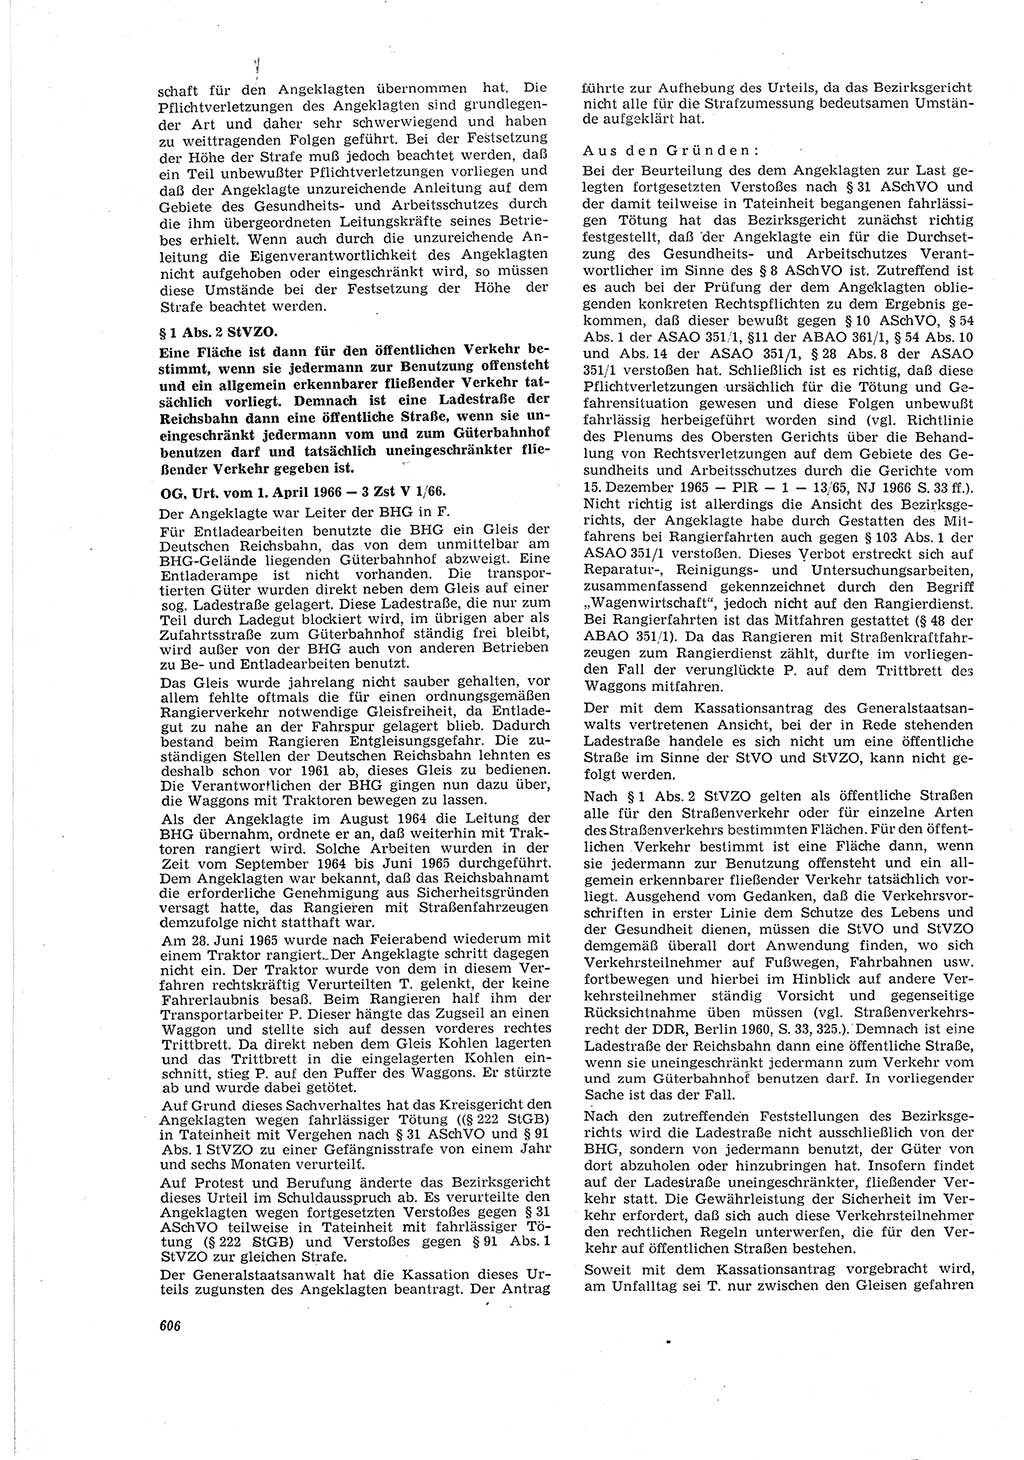 Neue Justiz (NJ), Zeitschrift für Recht und Rechtswissenschaft [Deutsche Demokratische Republik (DDR)], 20. Jahrgang 1966, Seite 606 (NJ DDR 1966, S. 606)